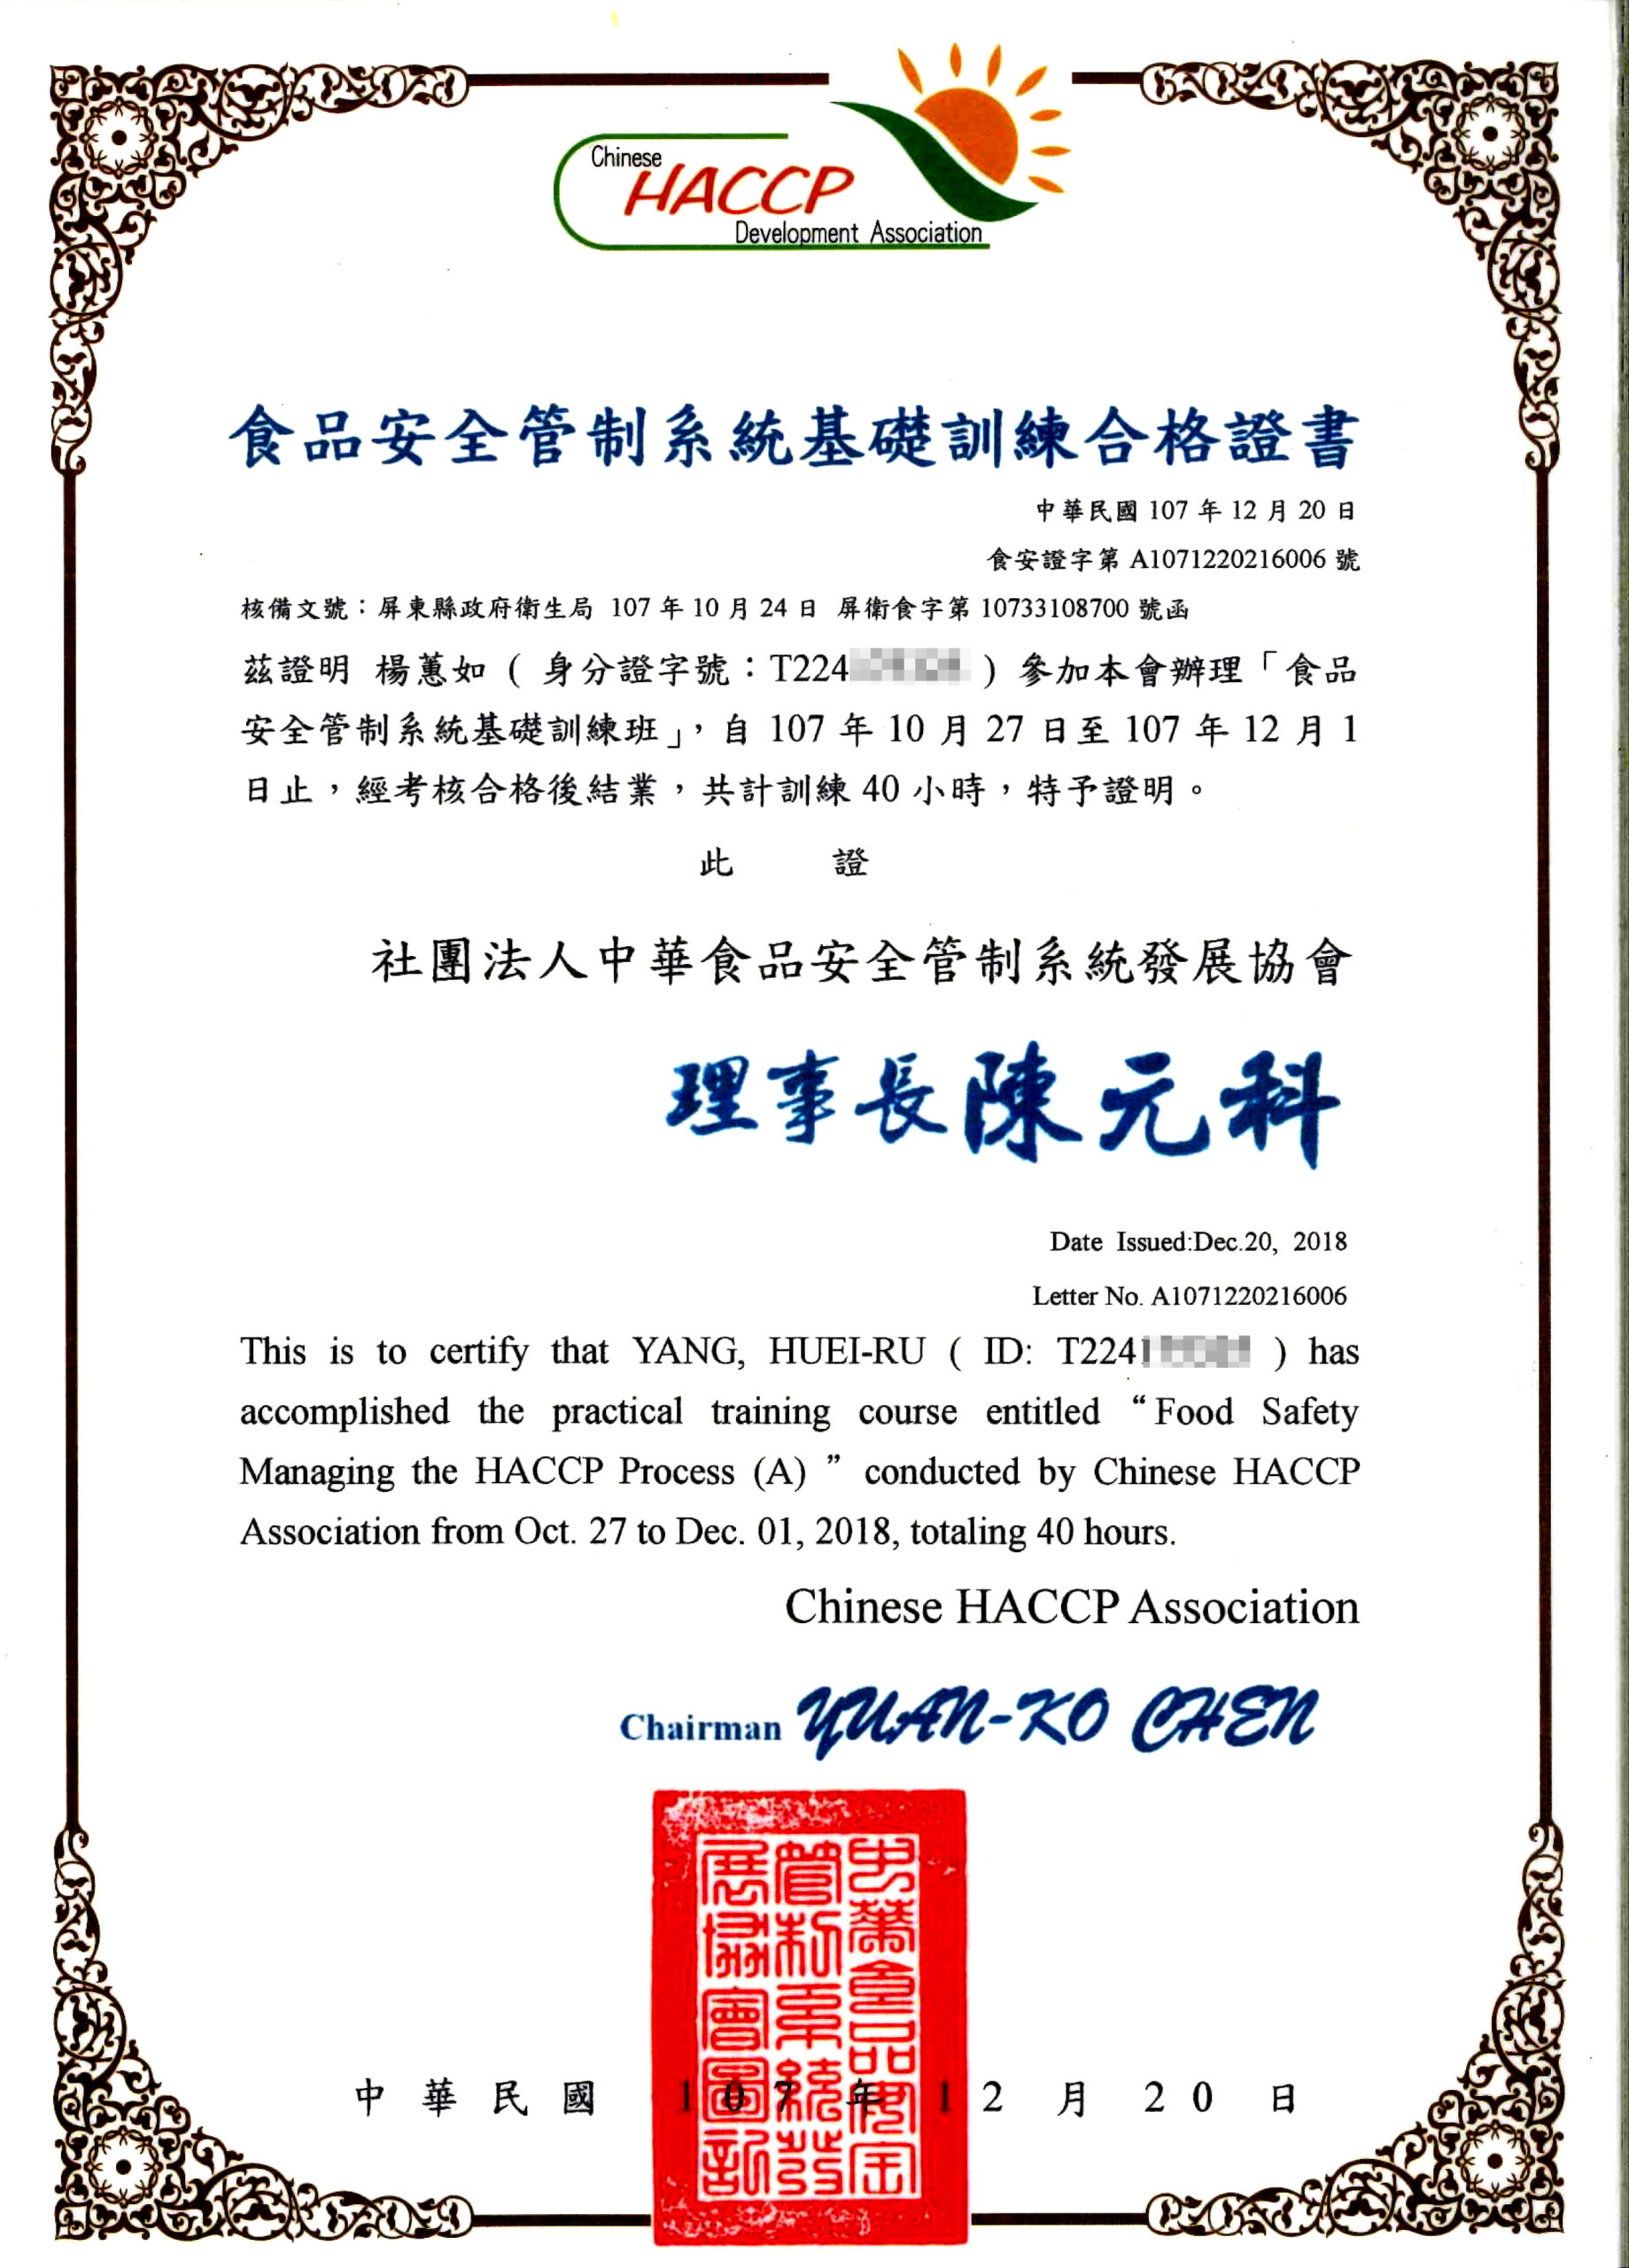 20210406楊蕙如HACCP證書-公開展示用1